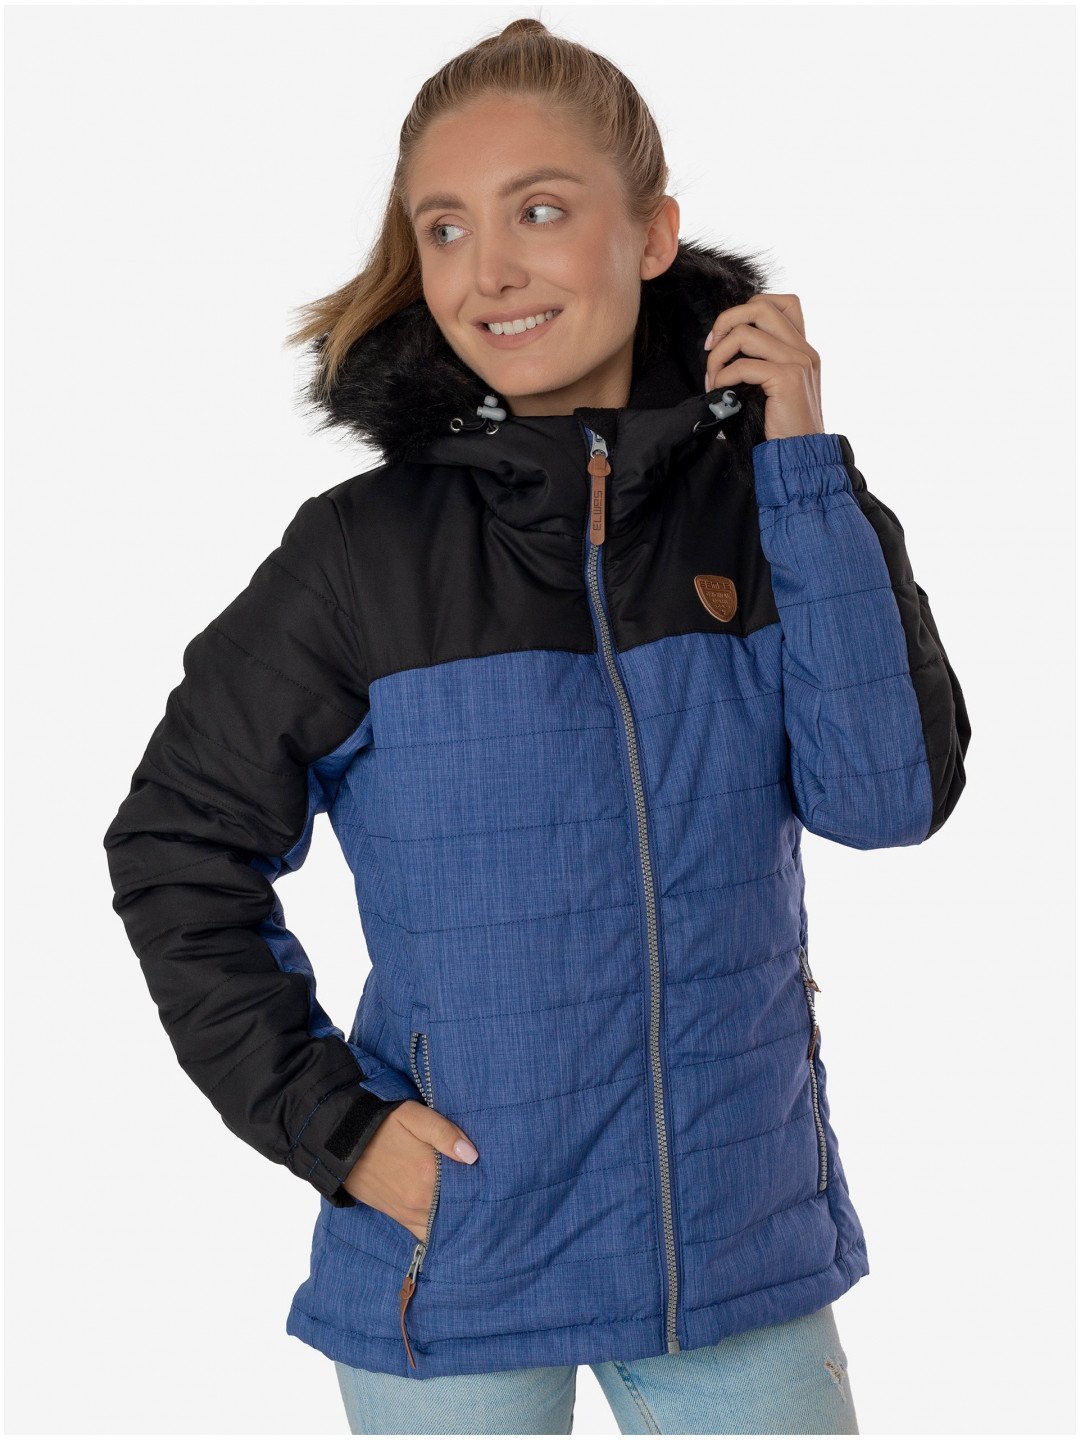 Černo-modrá dámská zimní bunda s kapucí SAM 73